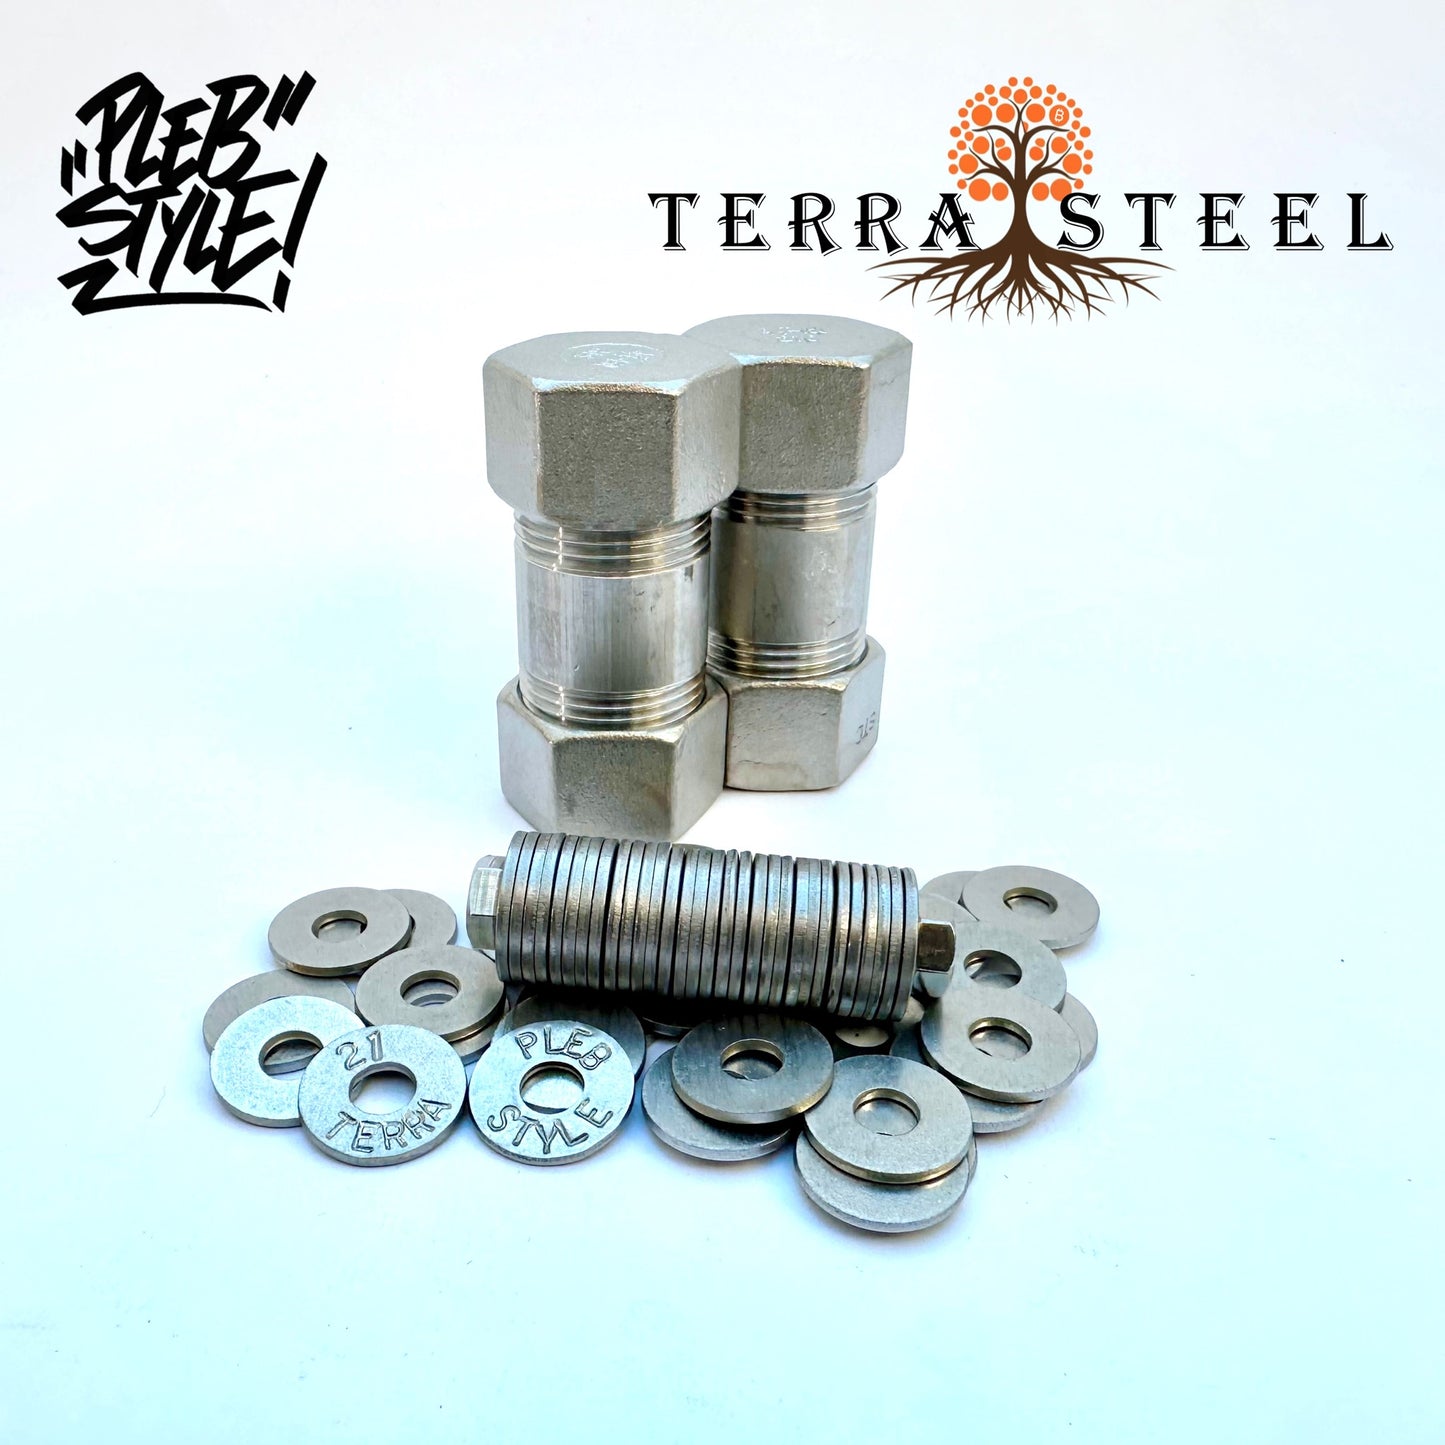 2x Terra Steel Wallet by Plebstyle